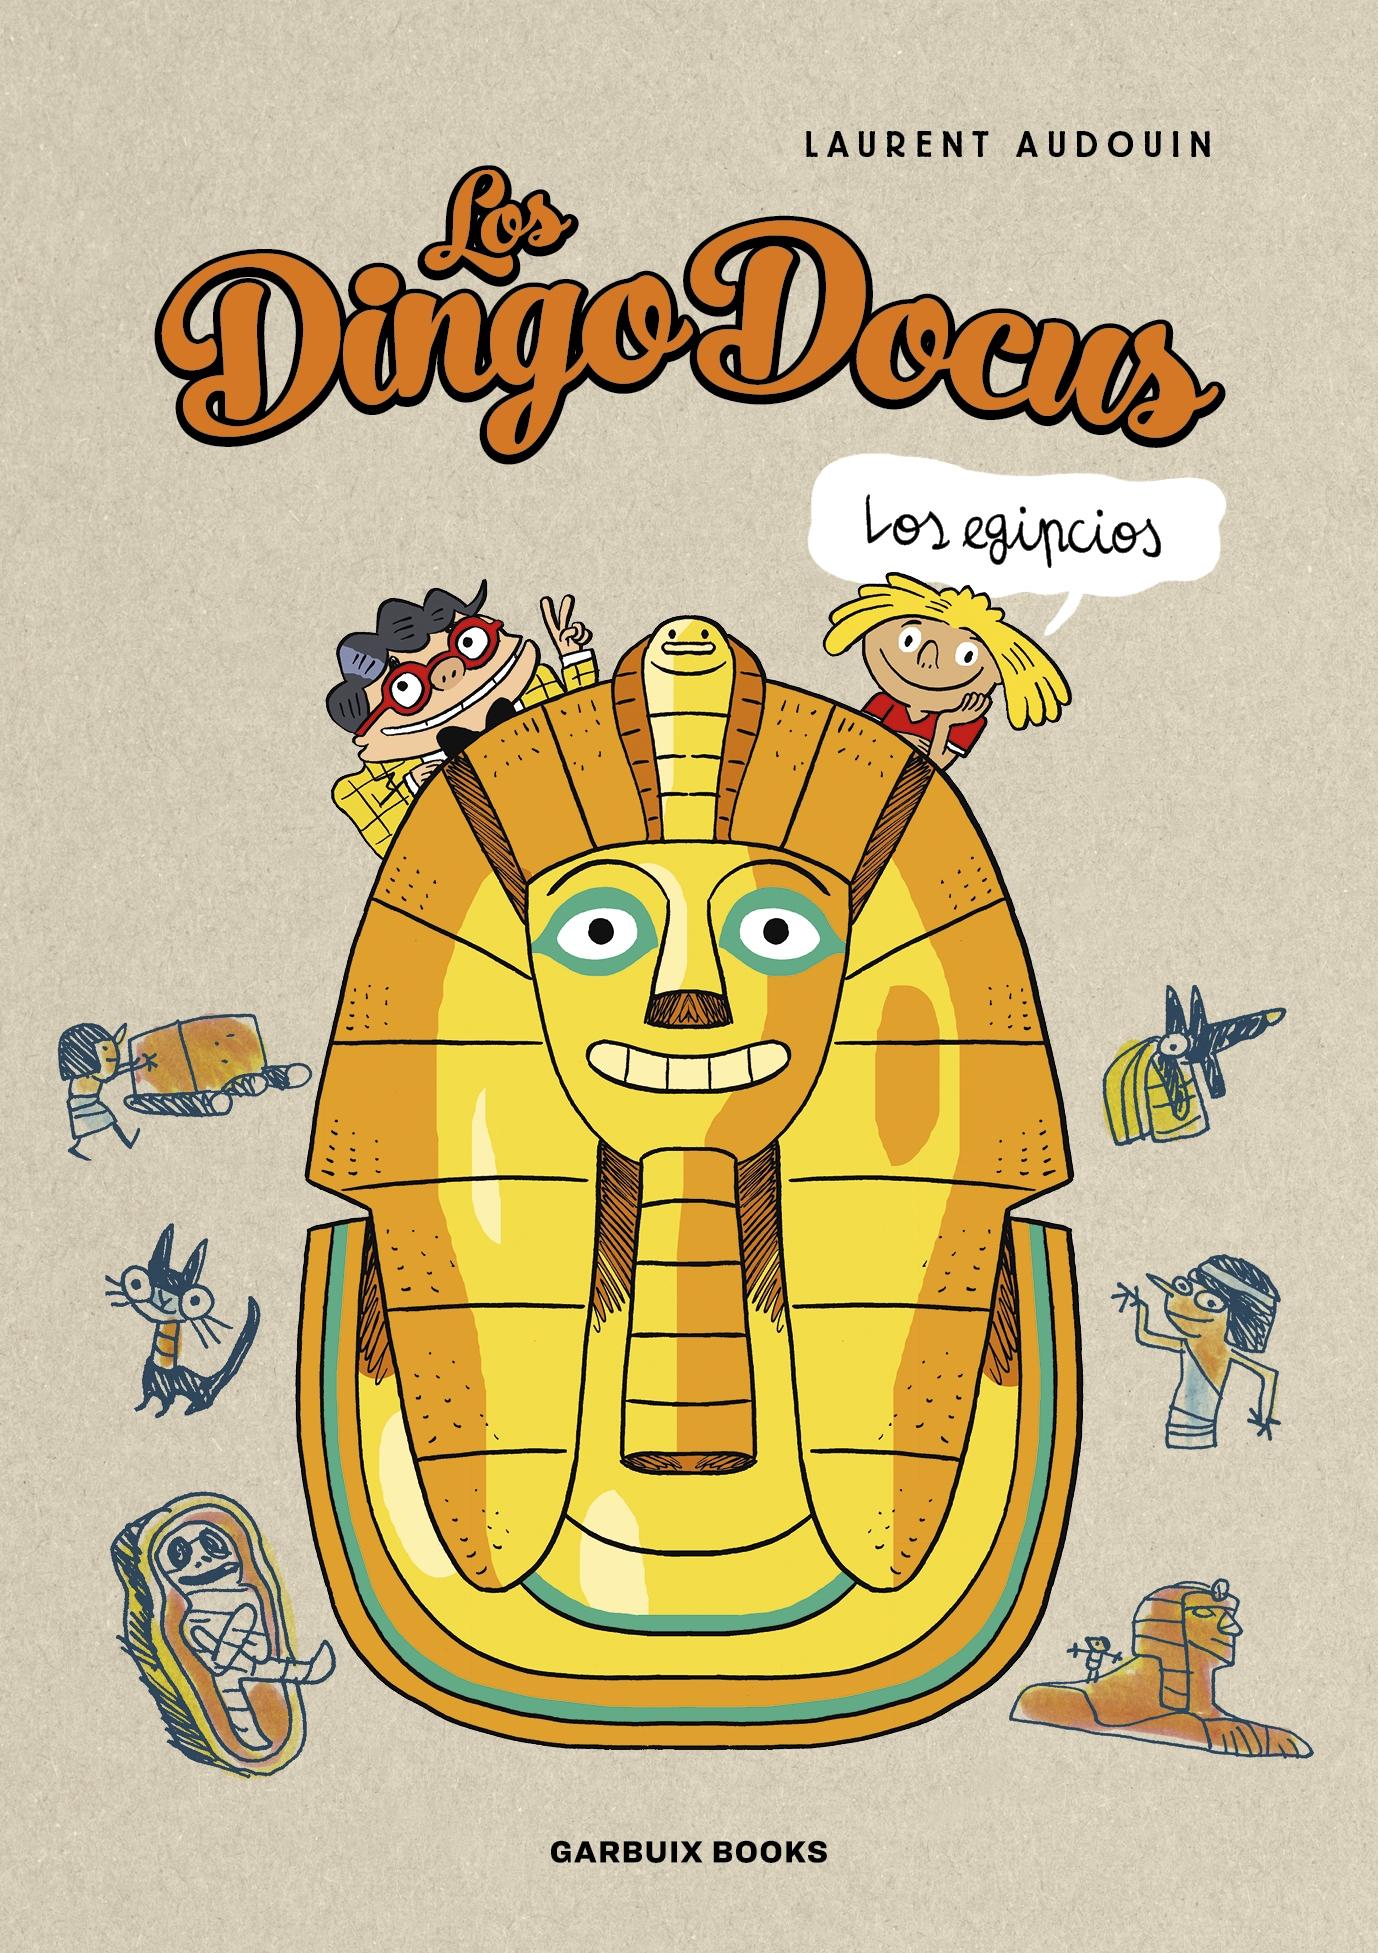 Dingo Docus - Los egipcios